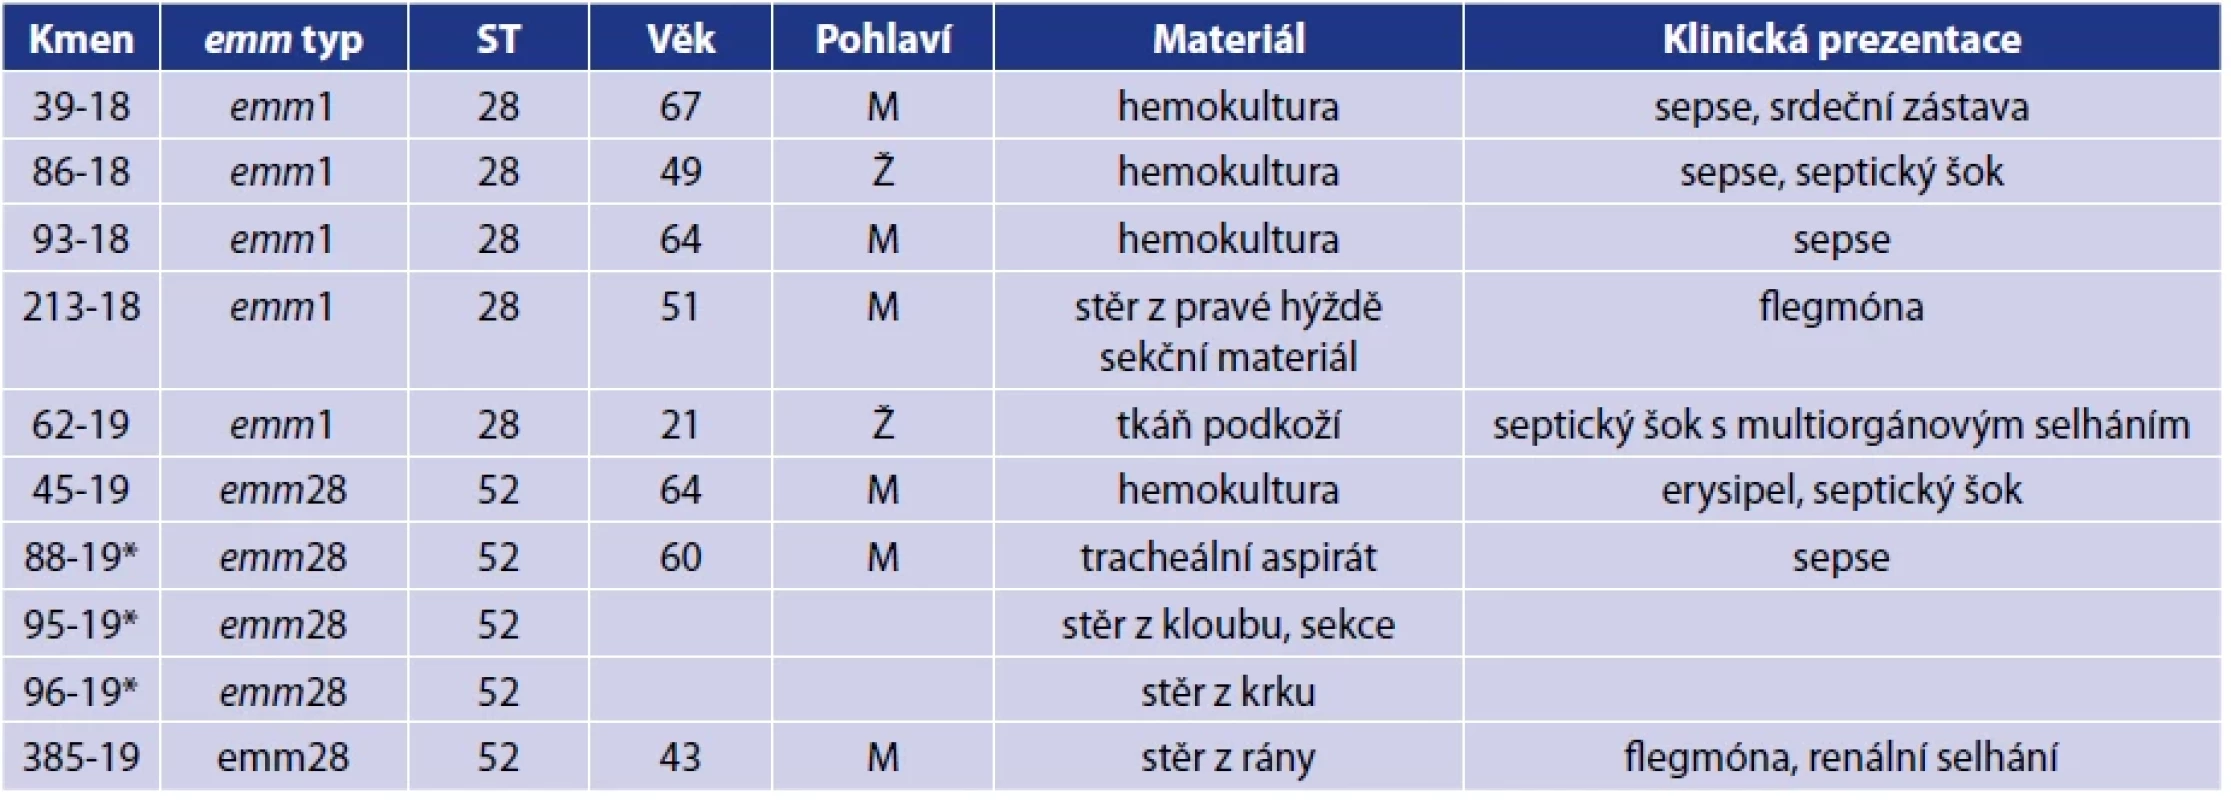 Charakterizace invazivních izolátů S. pyogenes</br>Table 1. Characterization of invasive S. pyogenes isolates